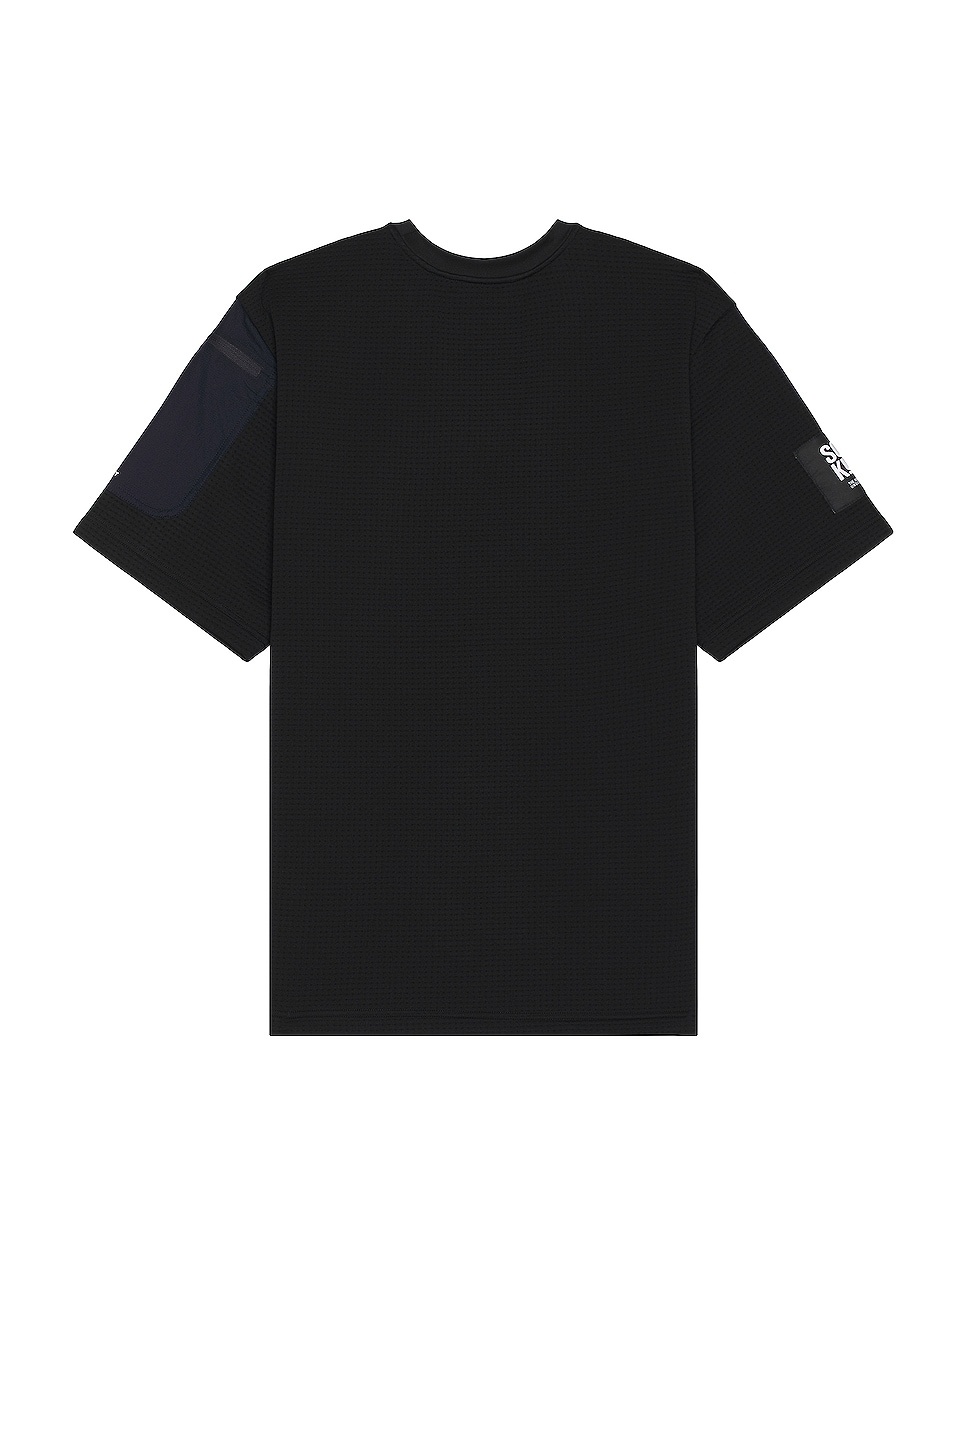 X Project U Dotknit T-shirt - 2